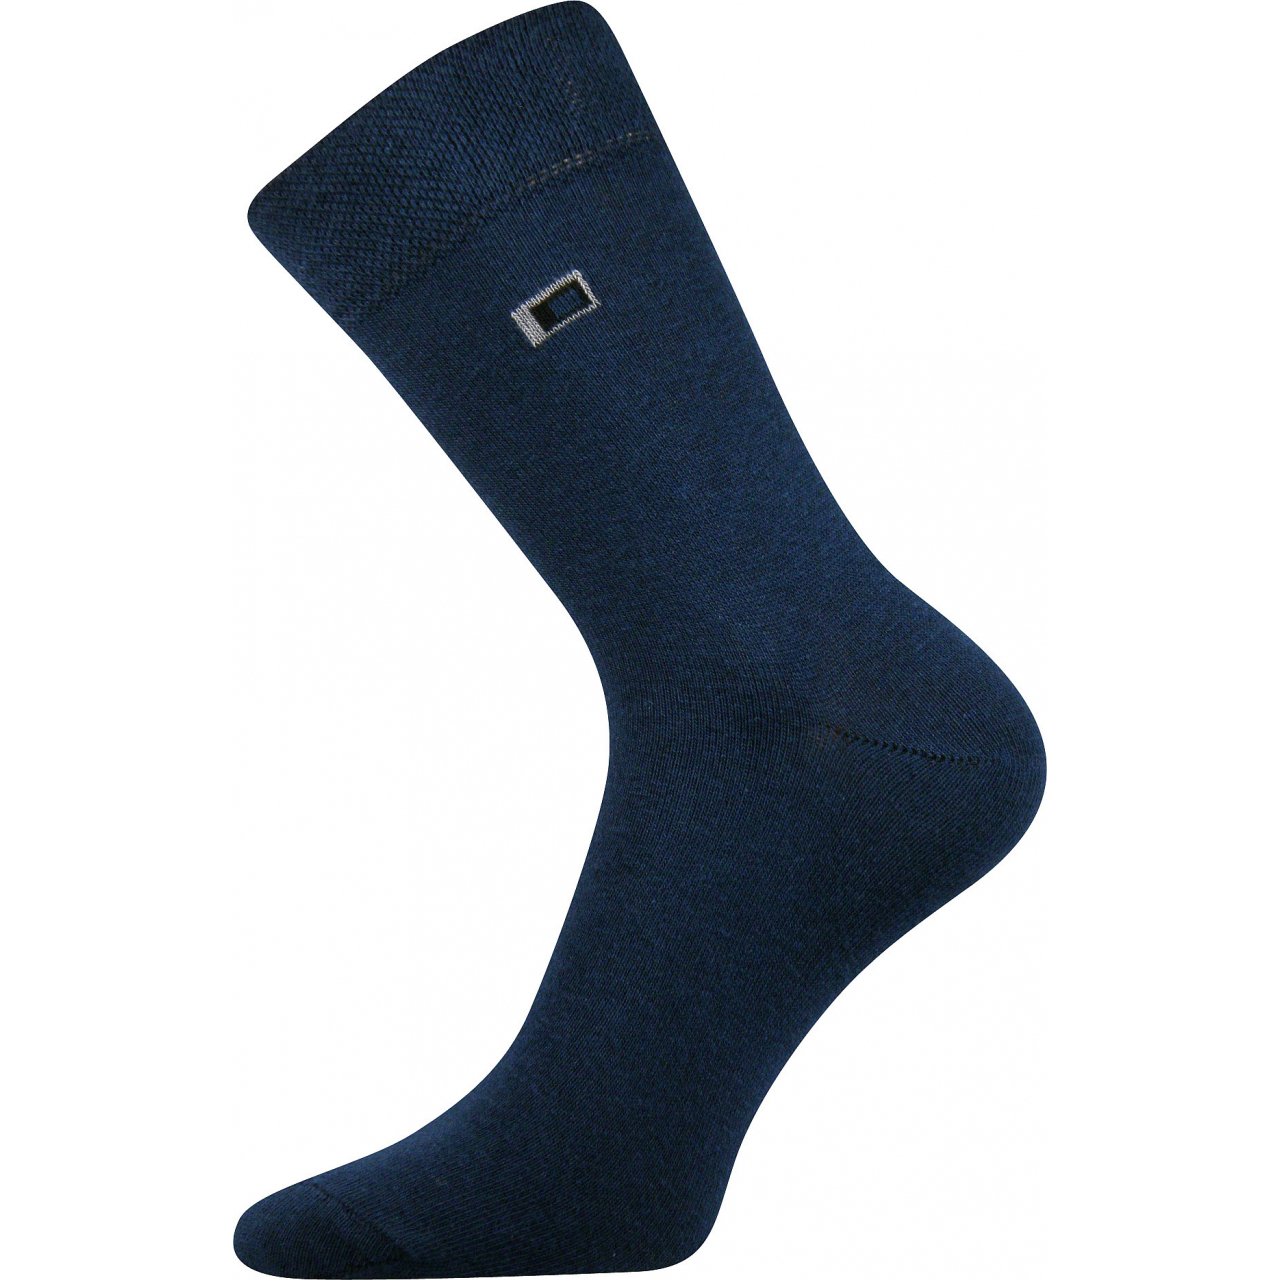 Ponožky pánské Voxx Žolík II - tmavě modré, 39-42